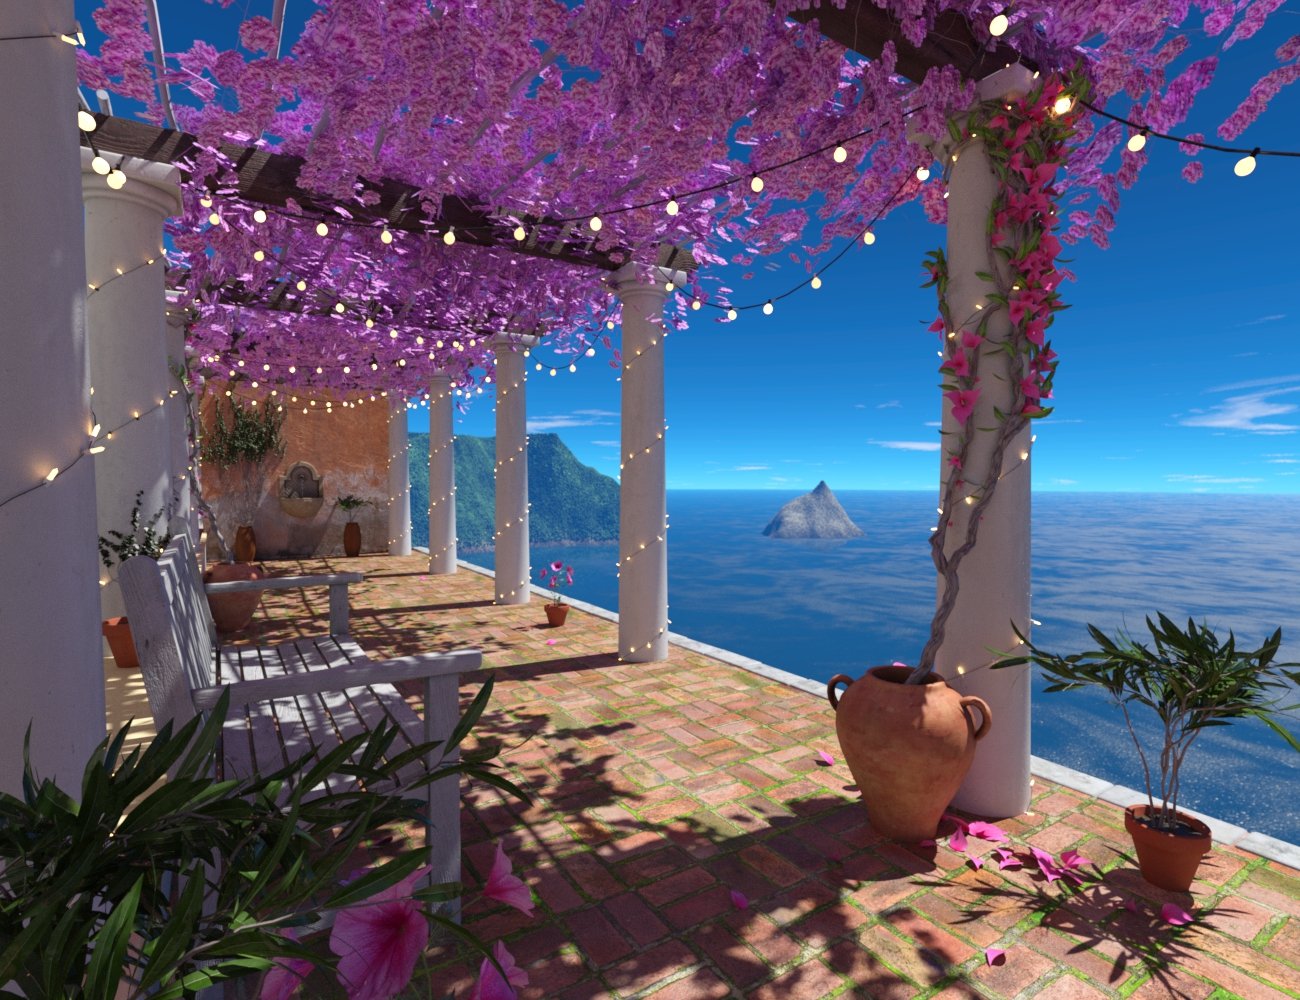 Mediterranean Vista by: bitwelder, 3D Models by Daz 3D